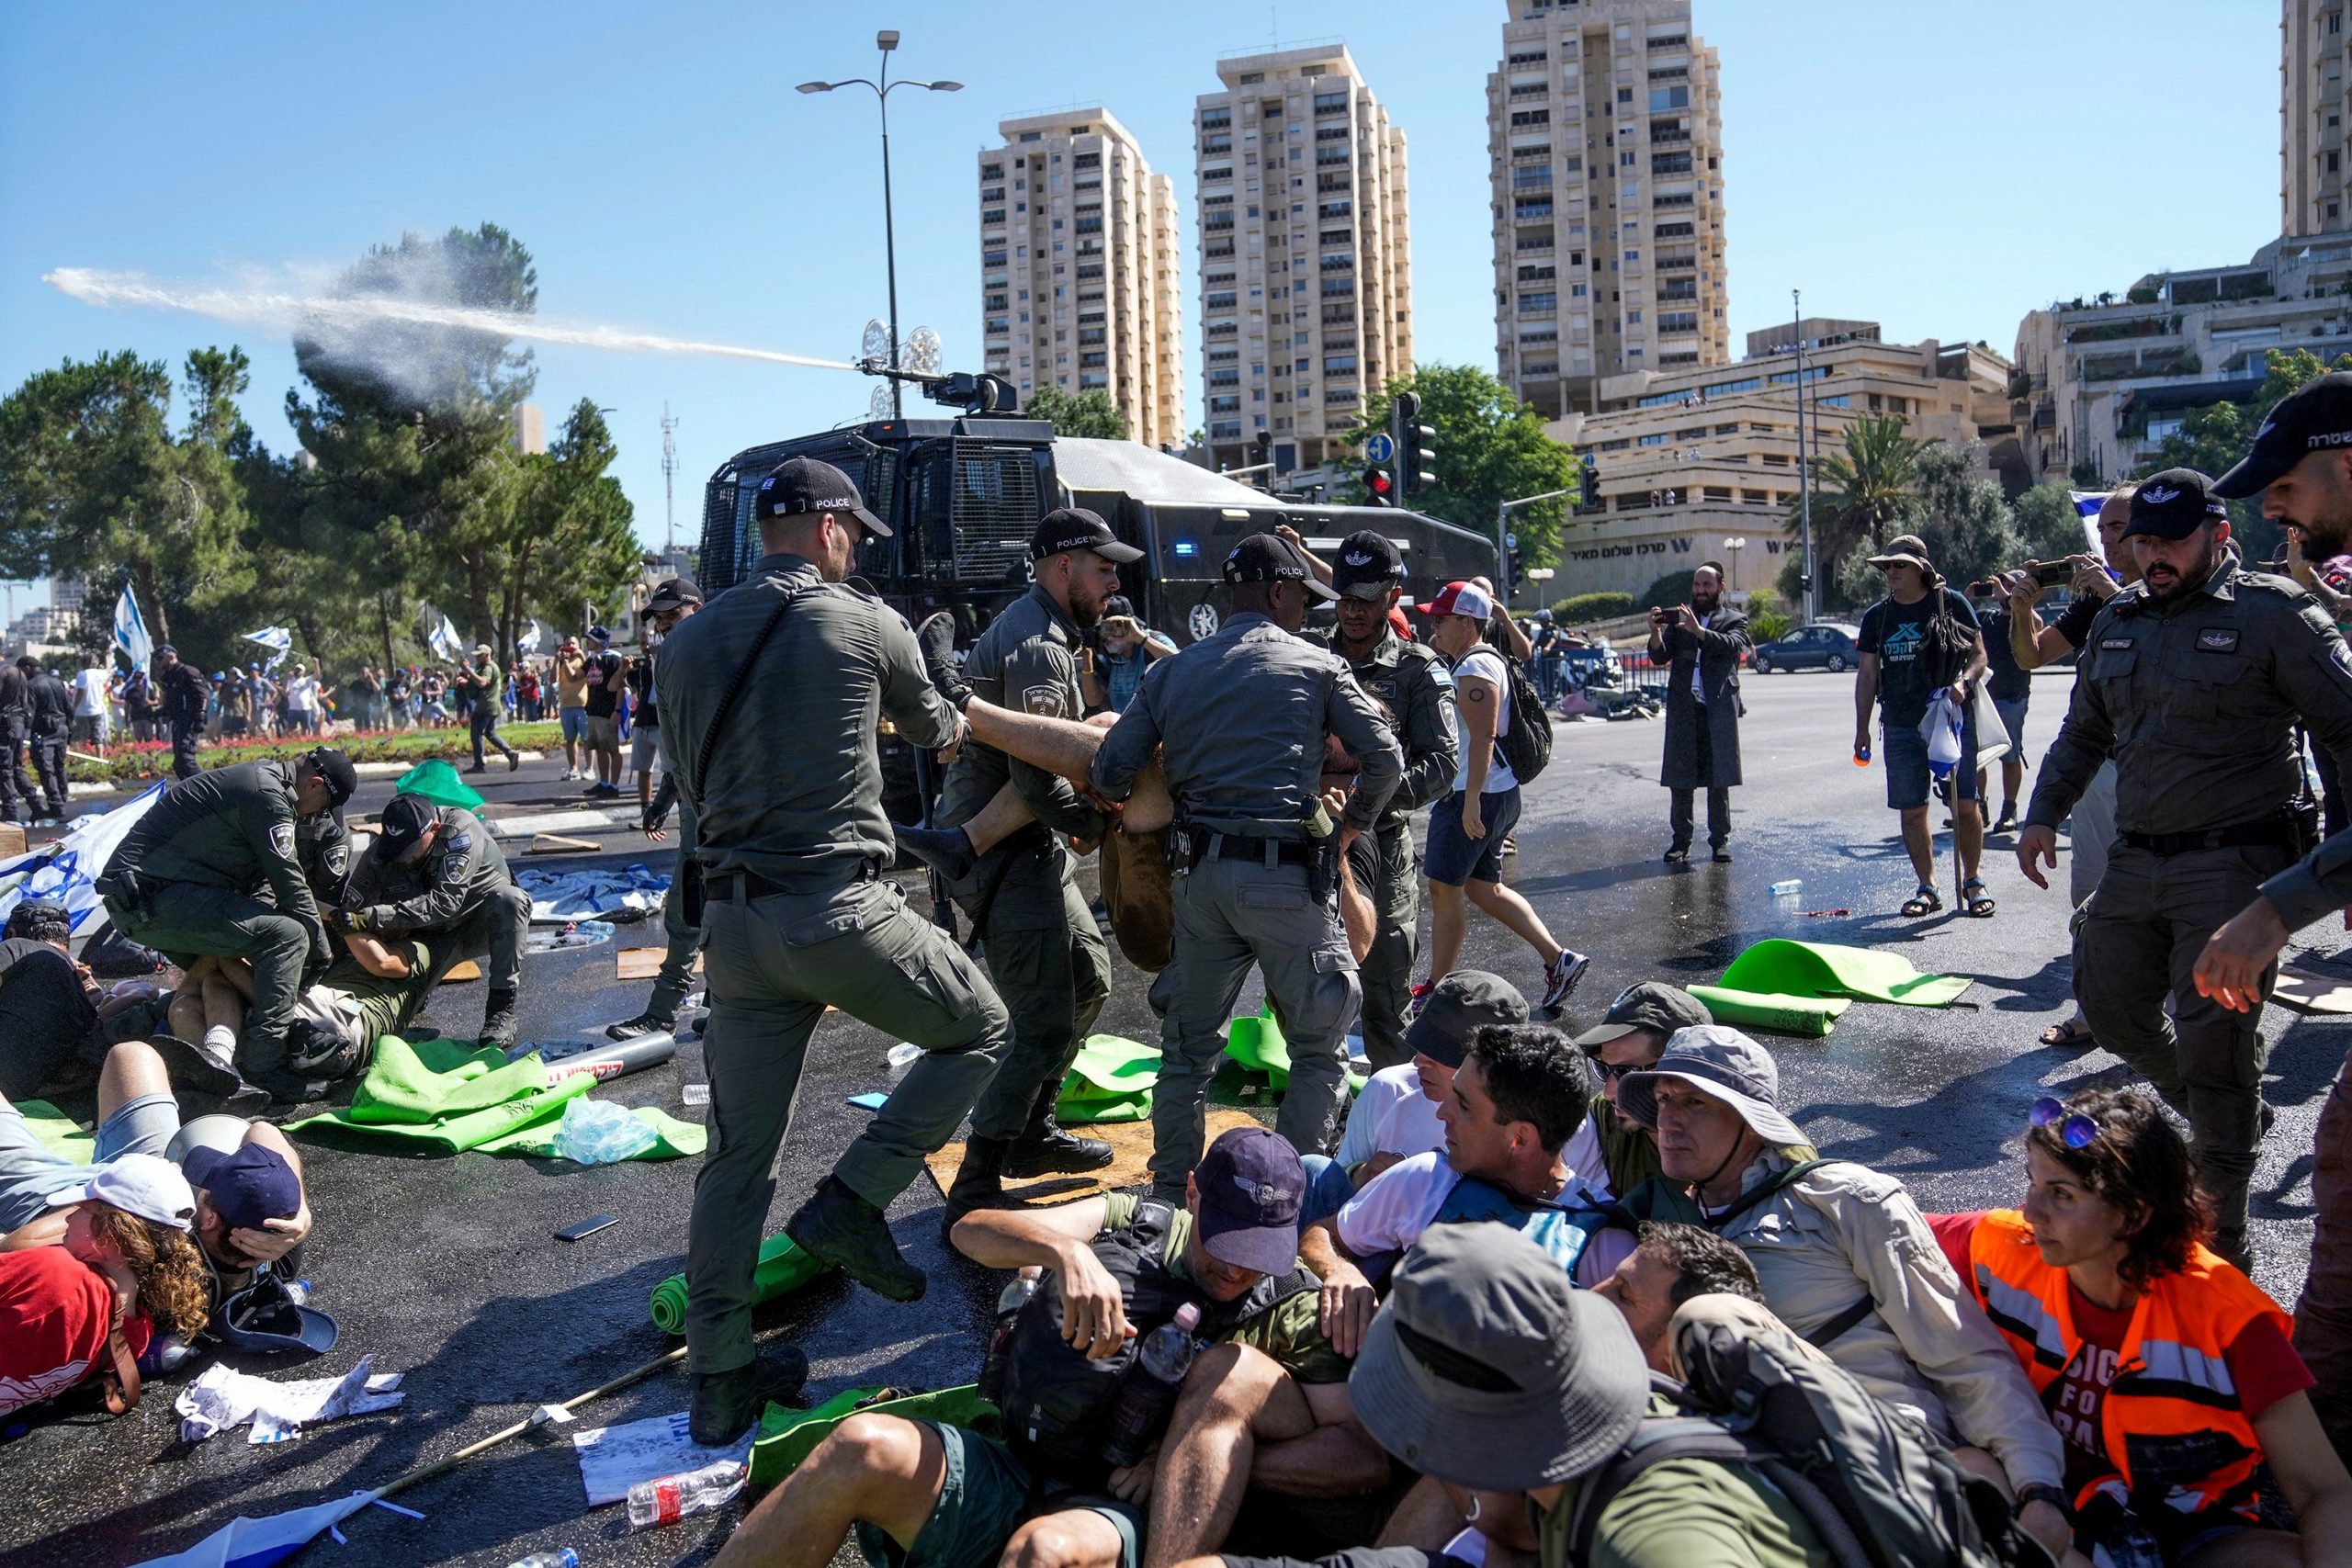 Israel's Internal Unrest Mitigating Internal Tensions in Israel